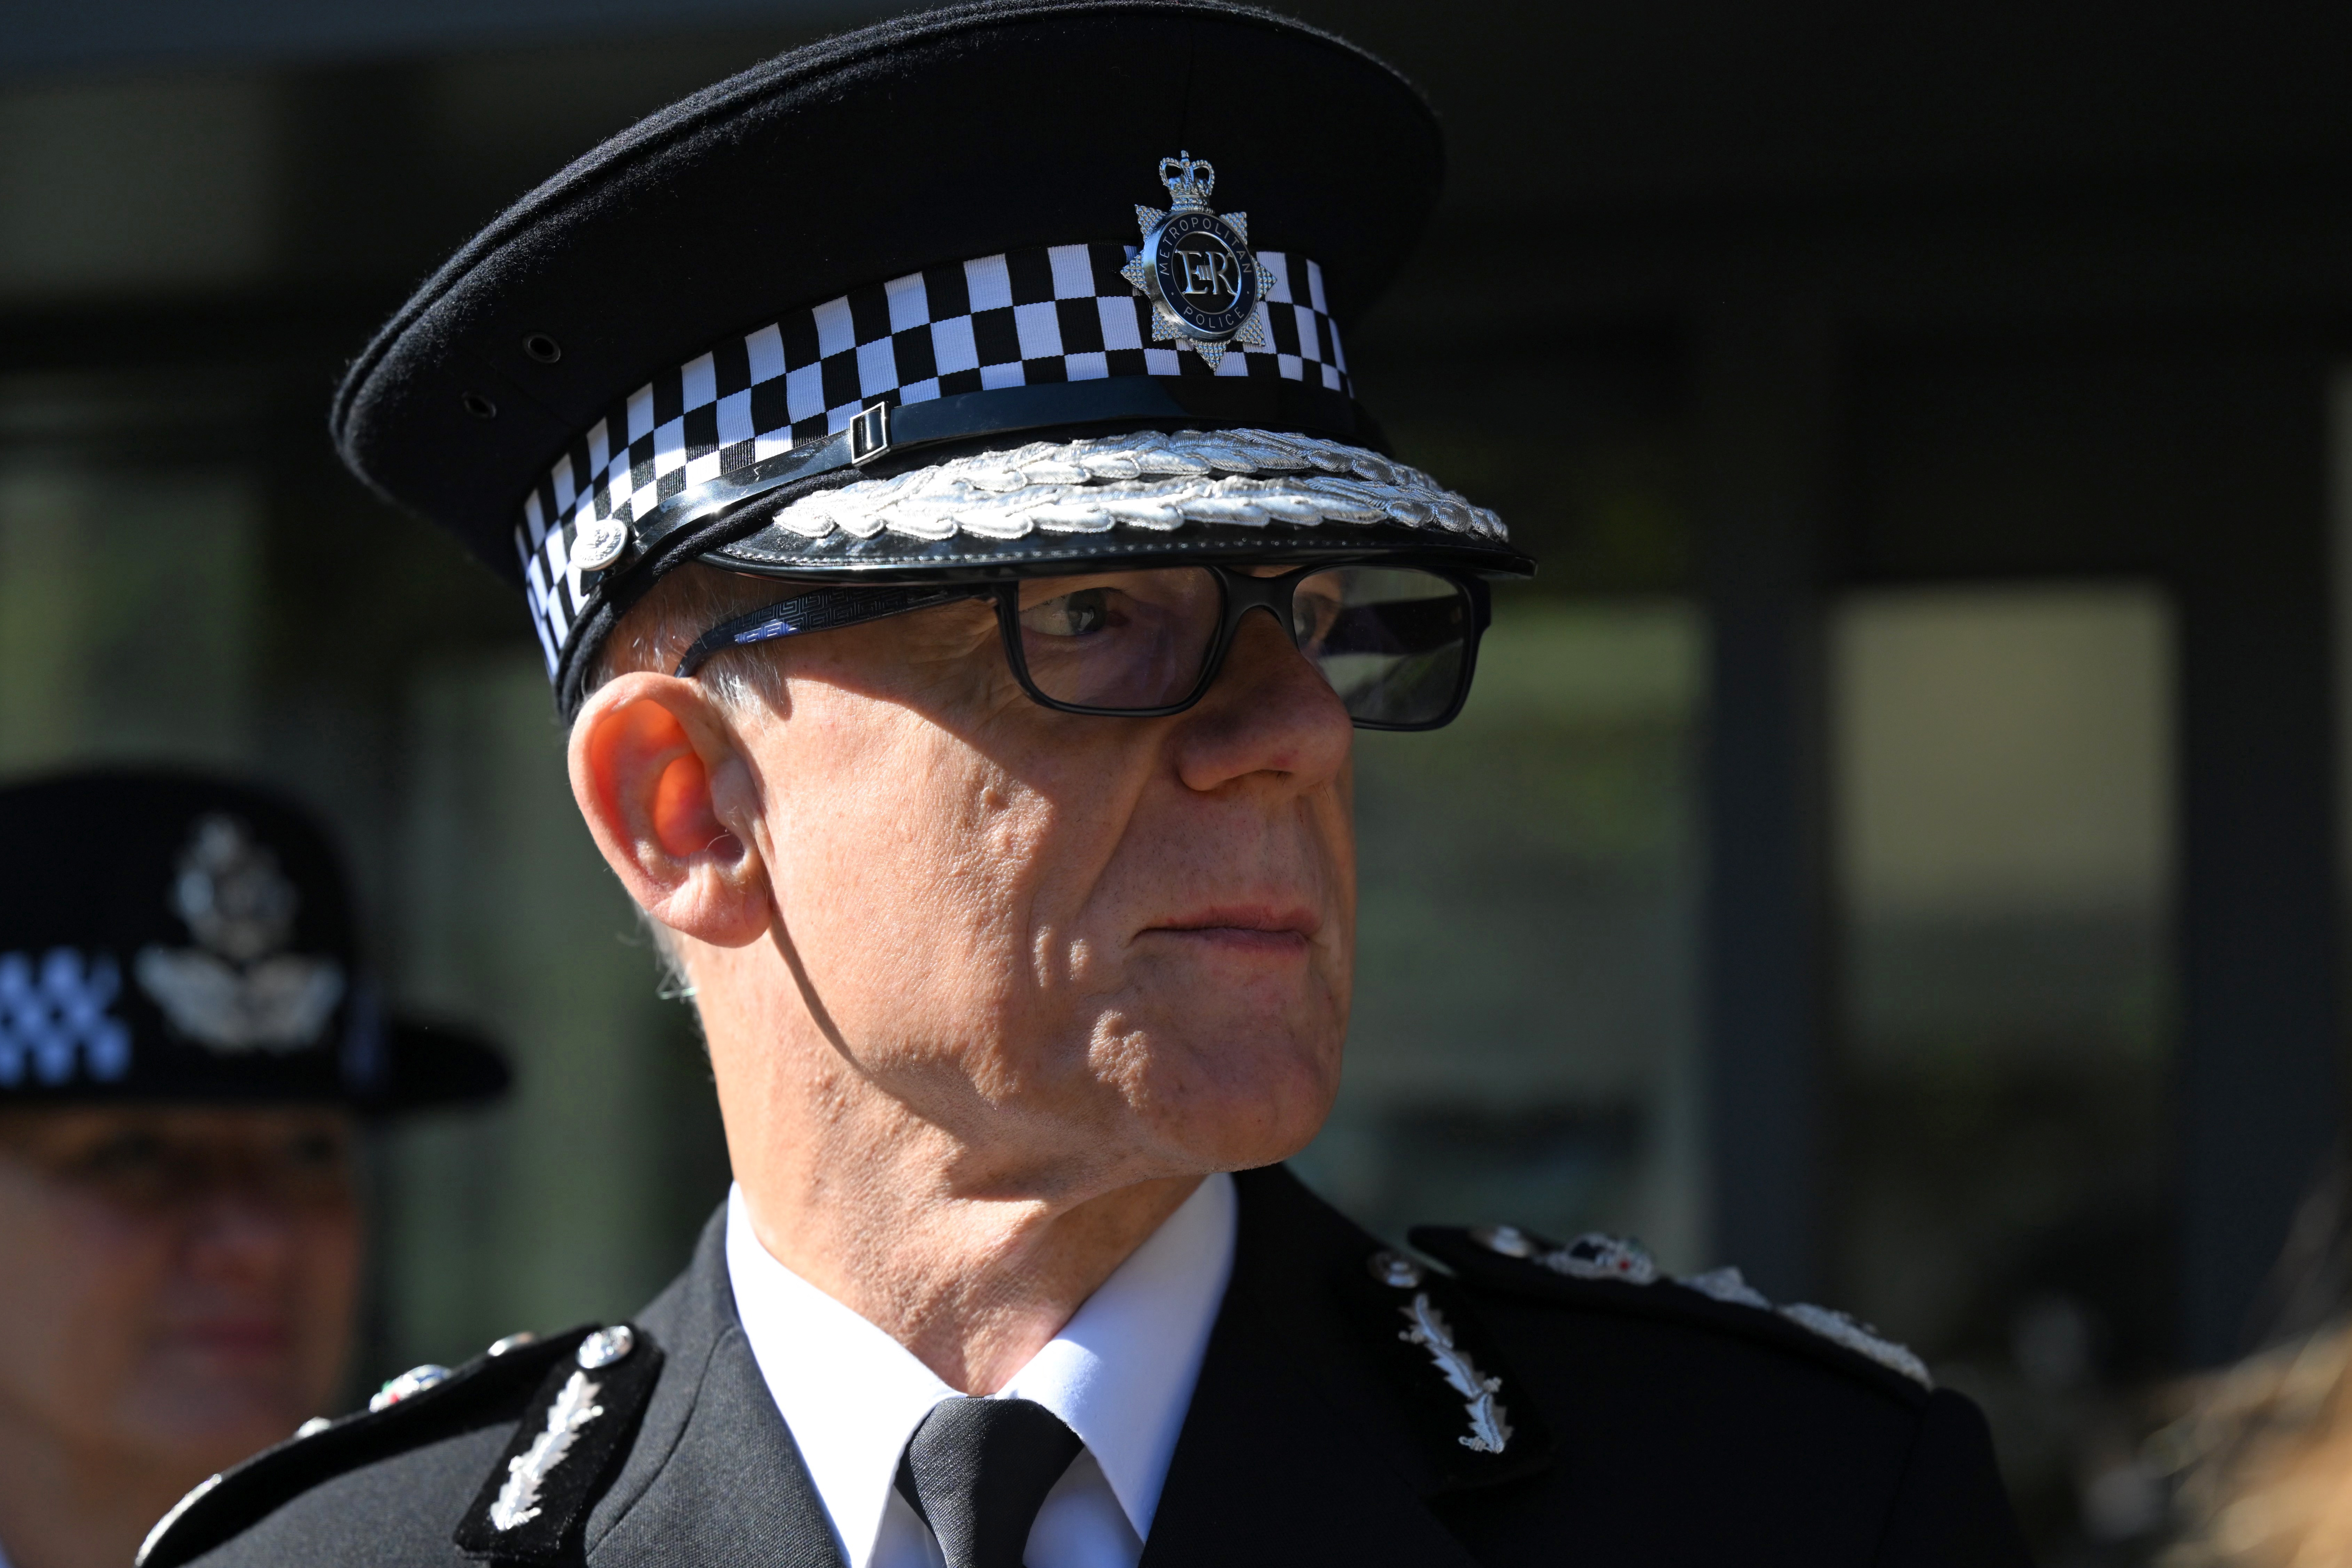 London: Neuer Polizeichef steht vor einer Herkulesaufgabe